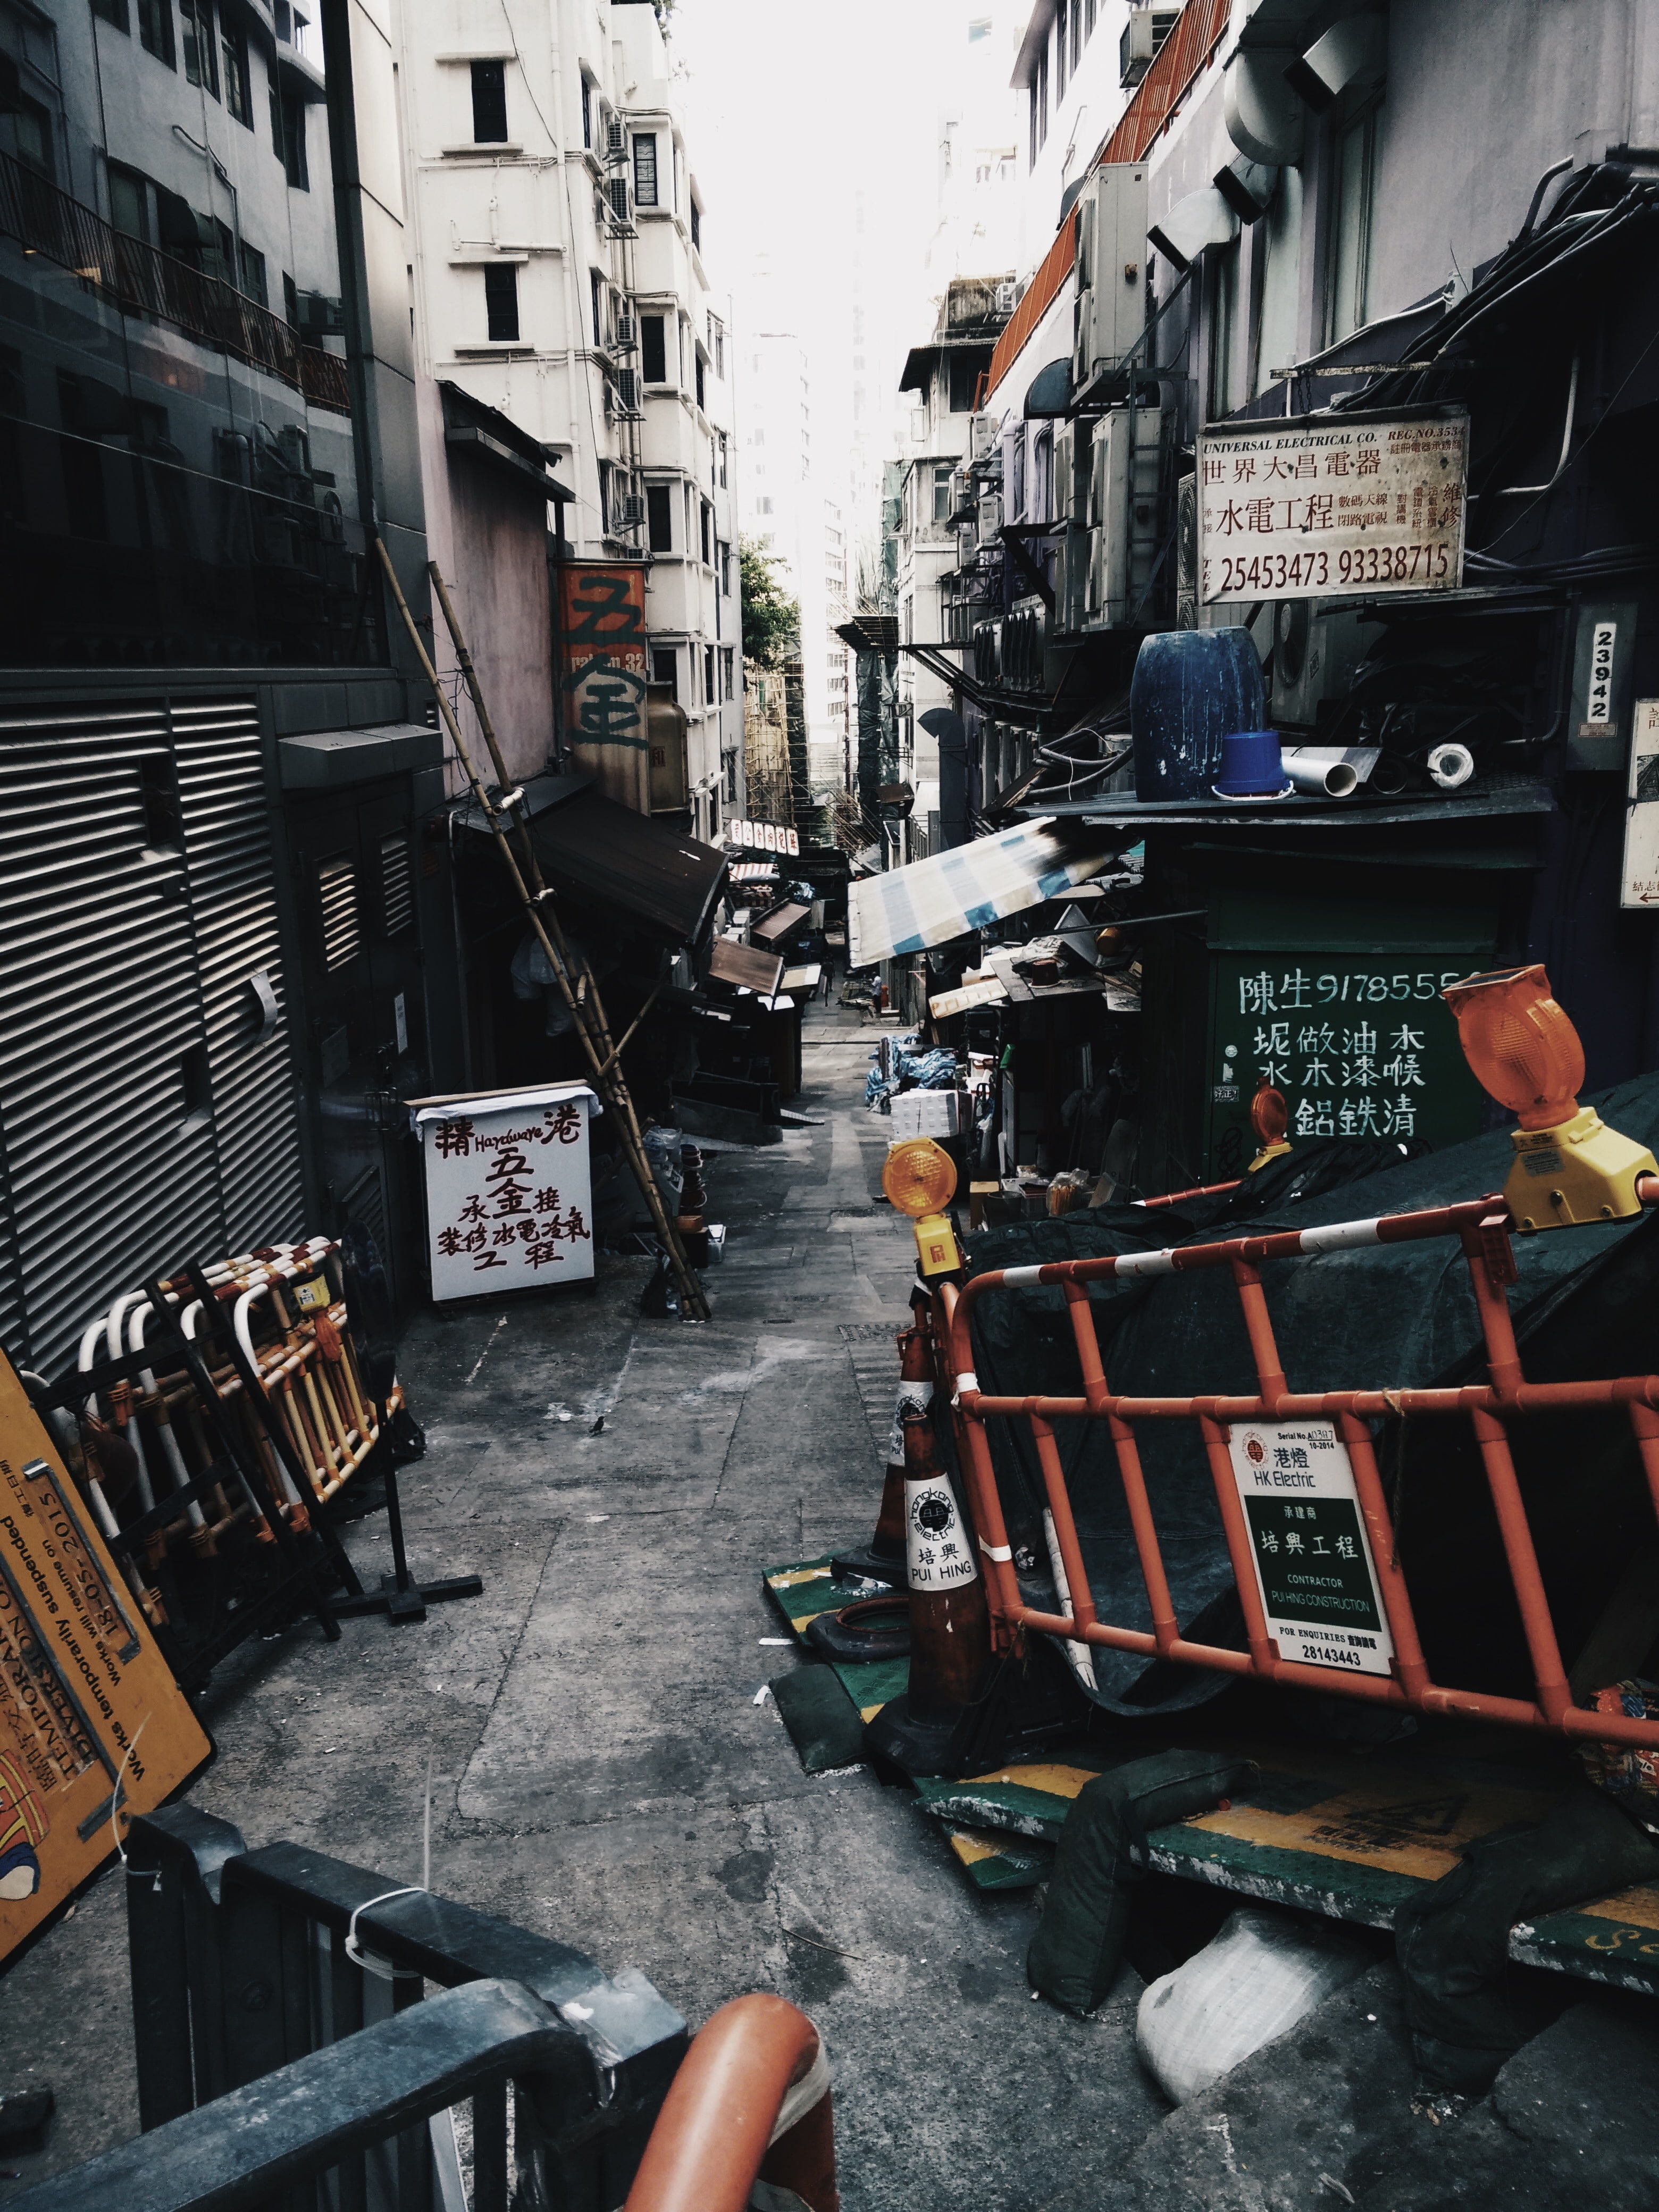 minimalism, construction site, alleyway, China, Hong Kong